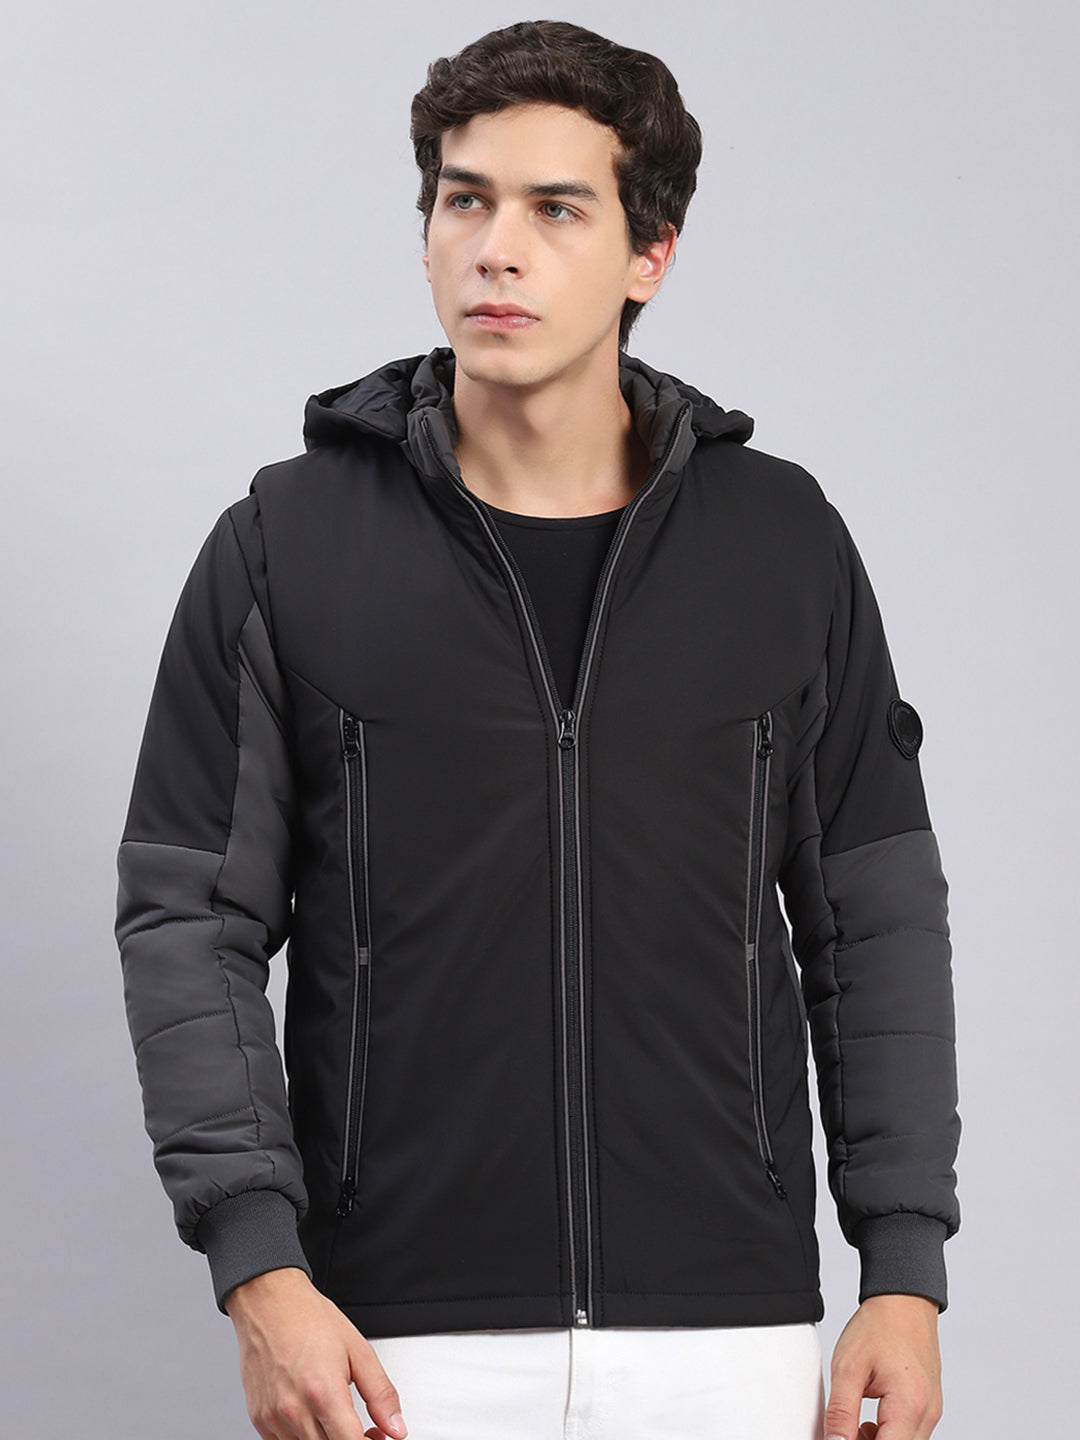 Buy Monte Carlo Black Solid Spread Collar Jacket at Amazon.in